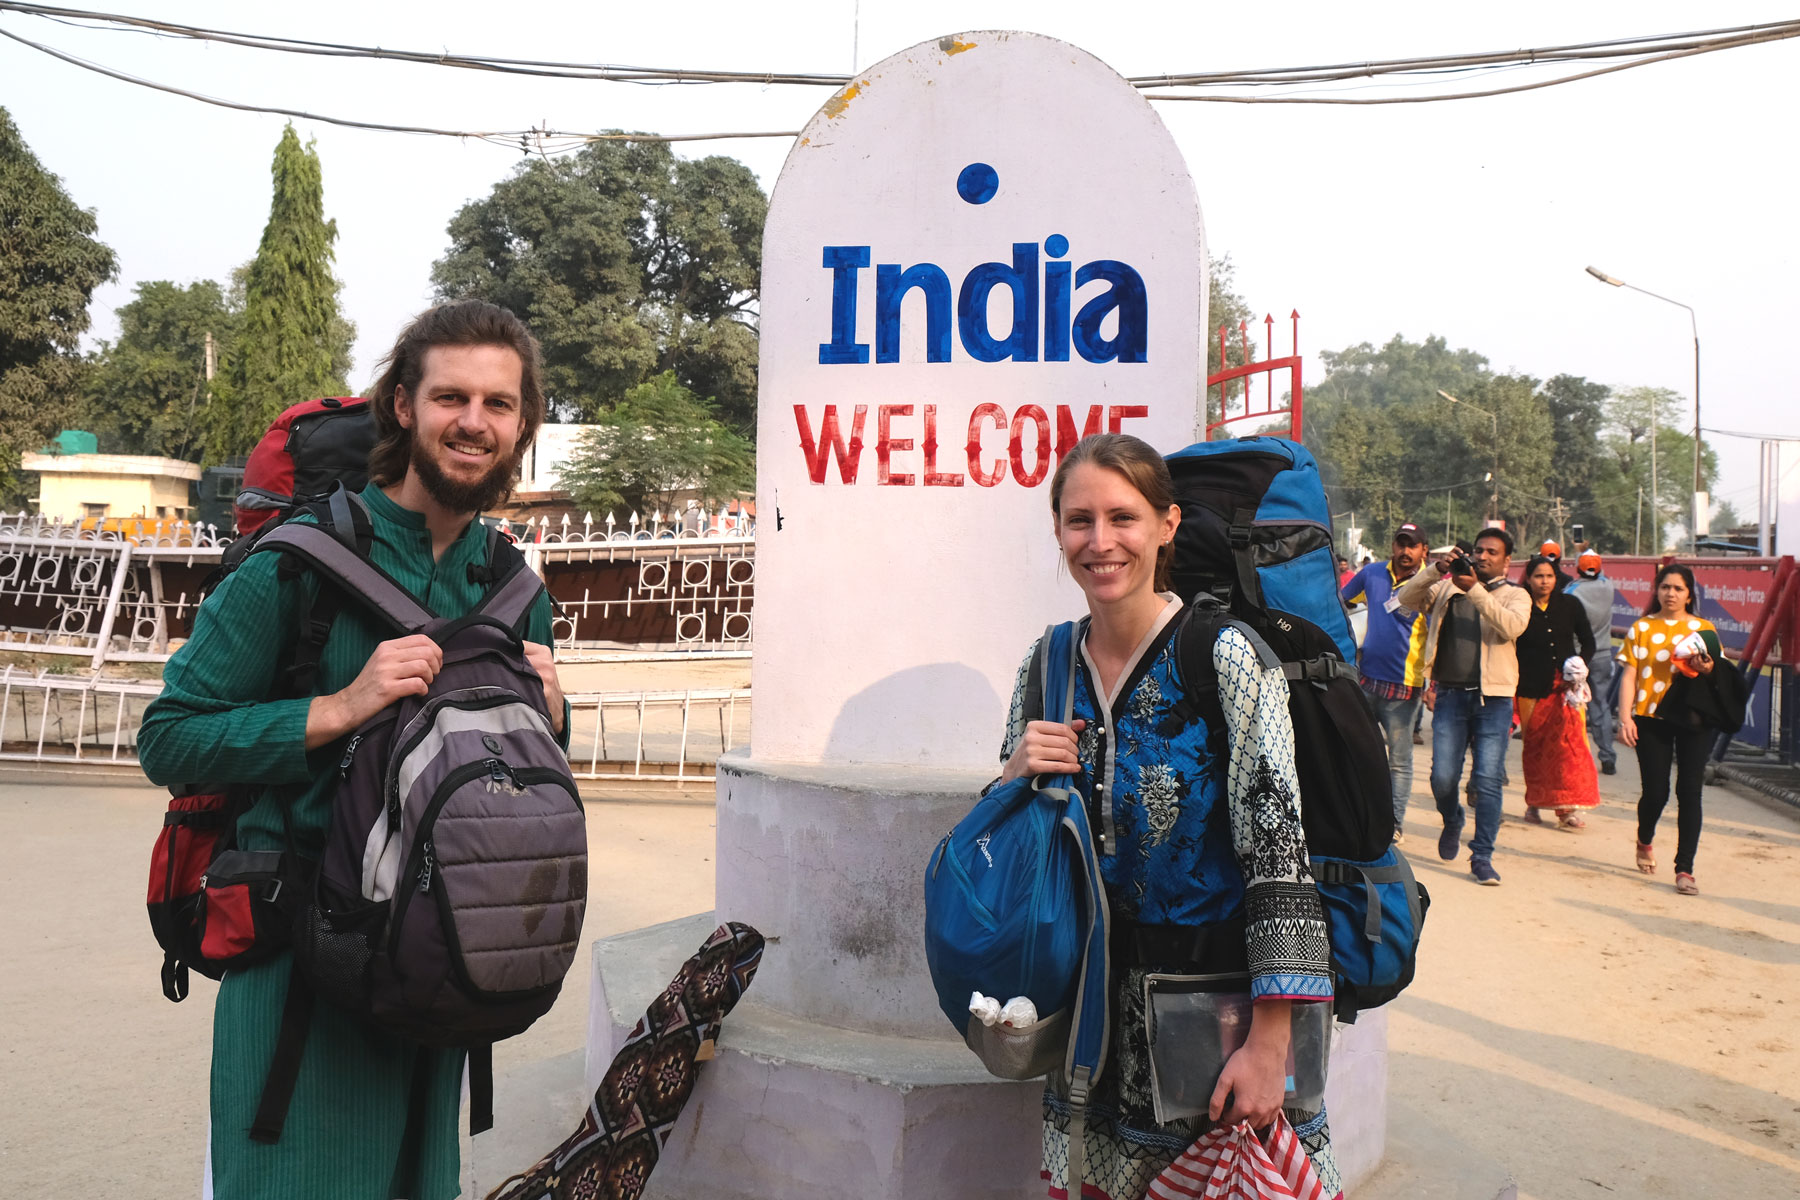 Sebastian und Leo mit Gepäck vor einem Monument mit der Aufschrift "India welcome".